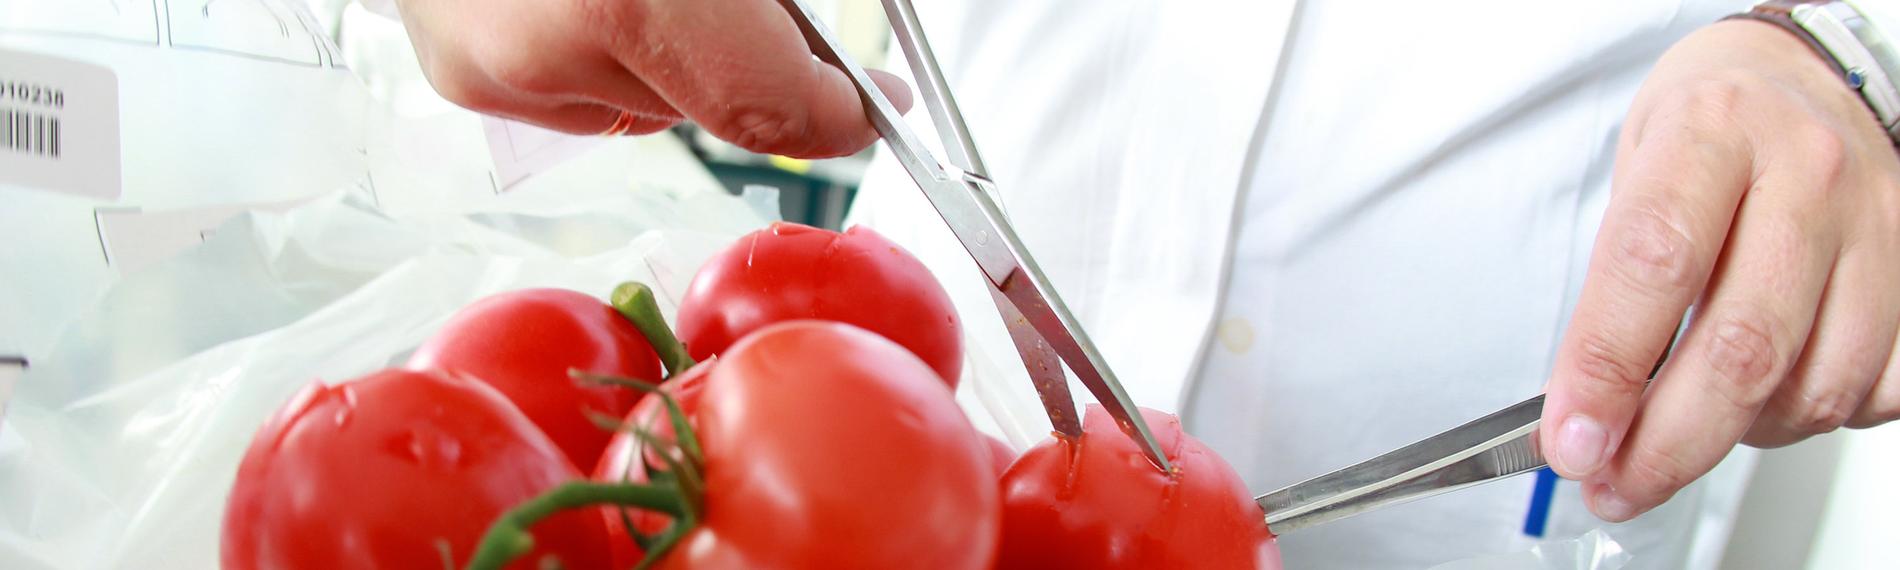 Ein Haufen von Tomaten liegt auf einer Plastikfolie und wird von zwei Händen mit jeweils einer Laborschere angeschnitten.